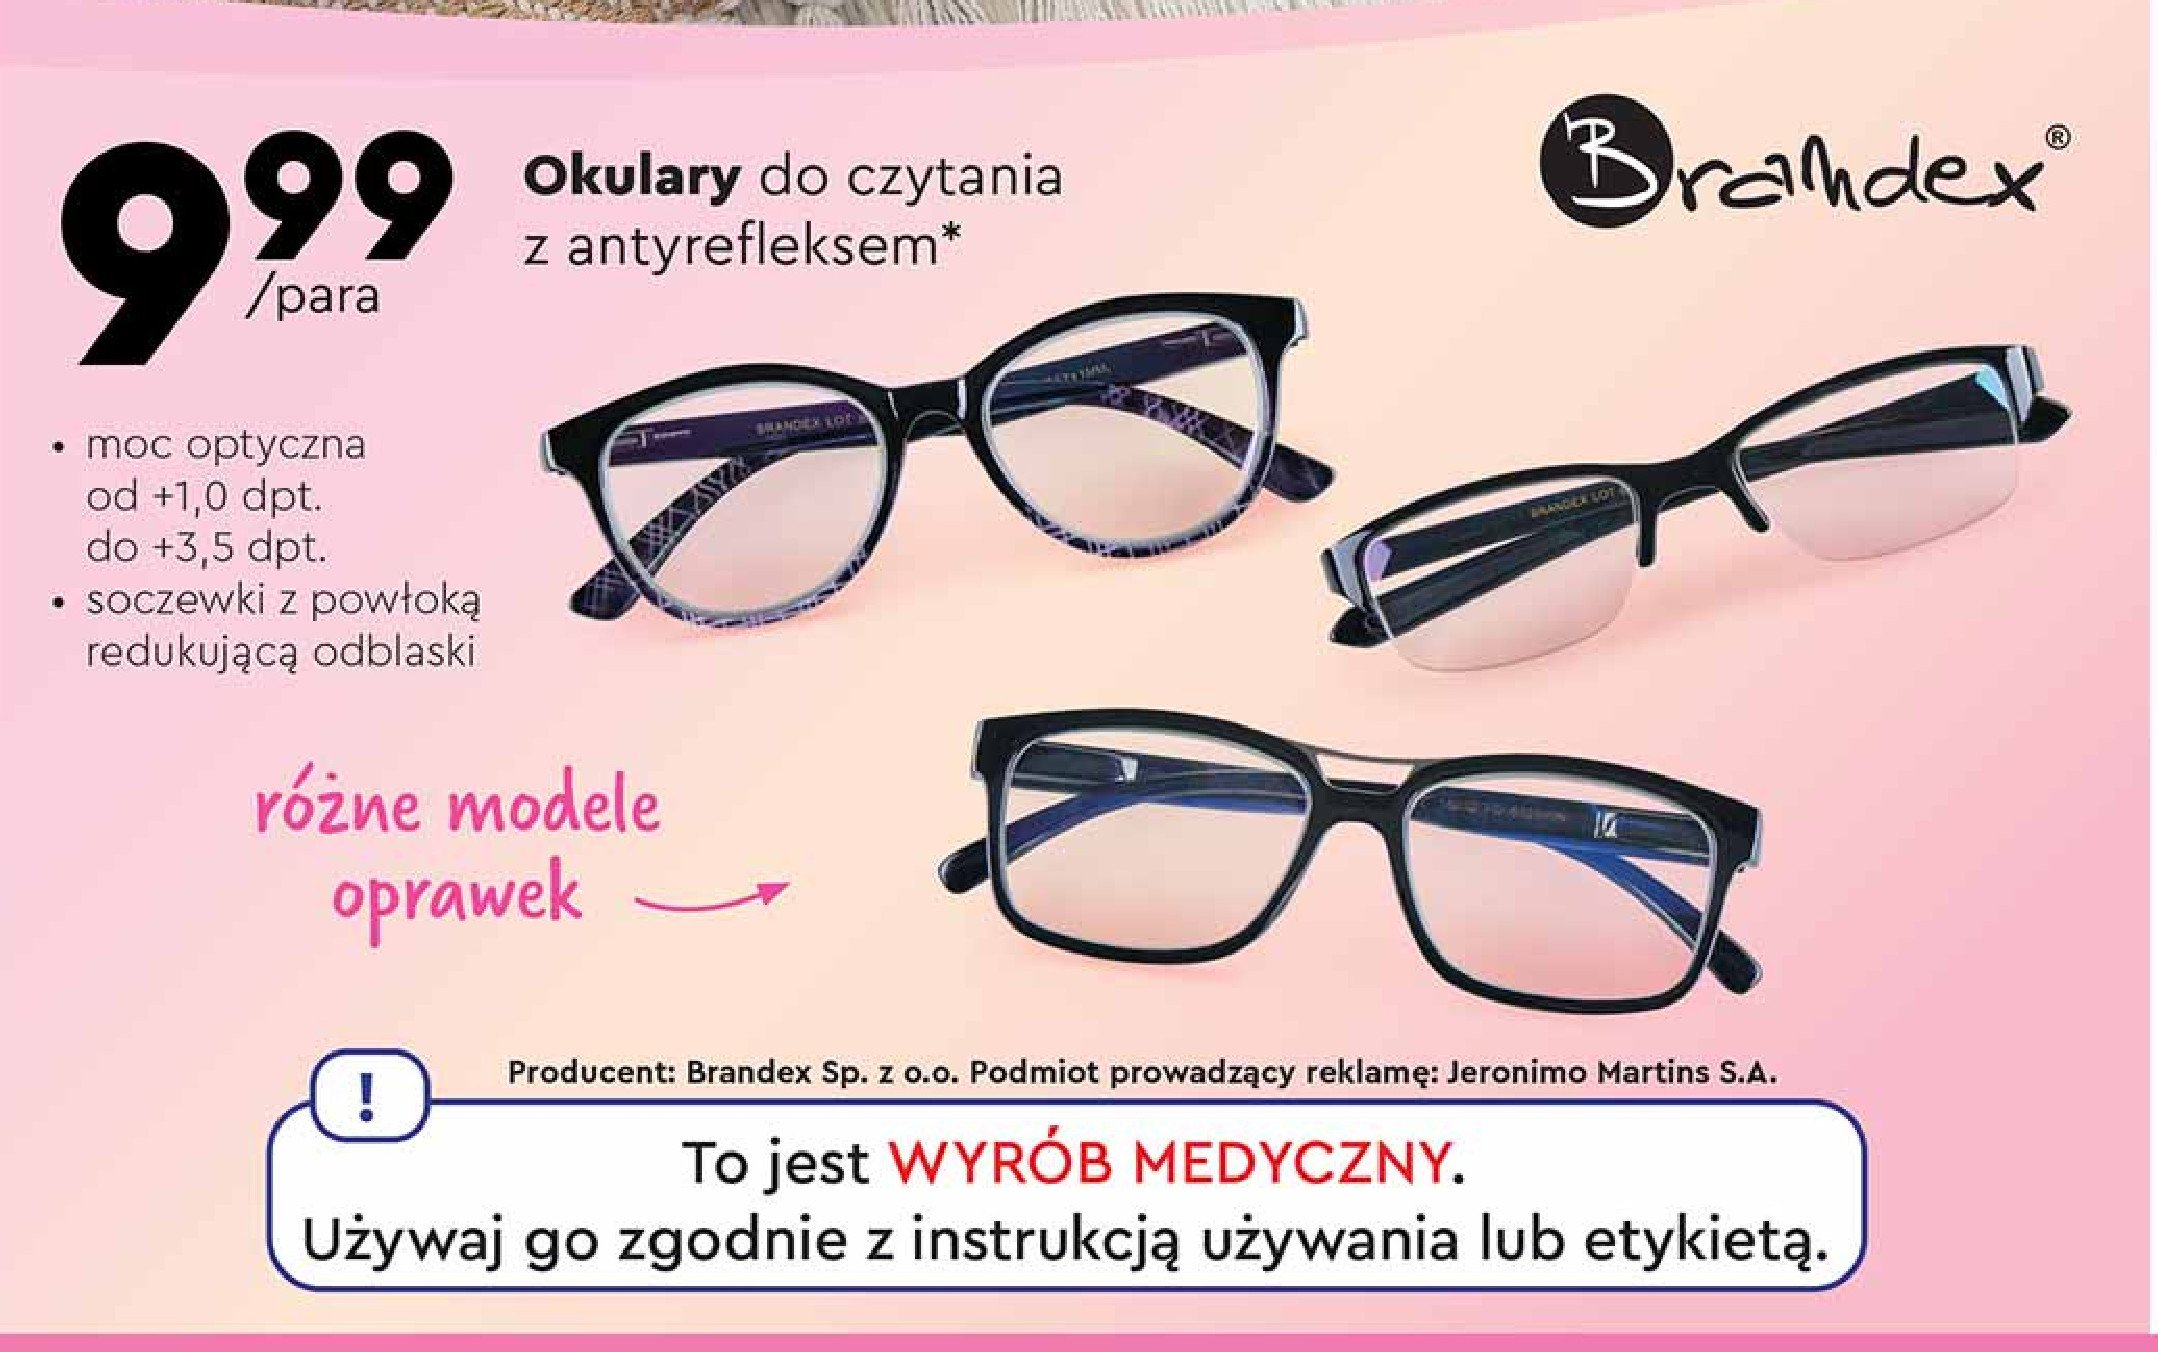 Okulary do czytania Brandex promocja